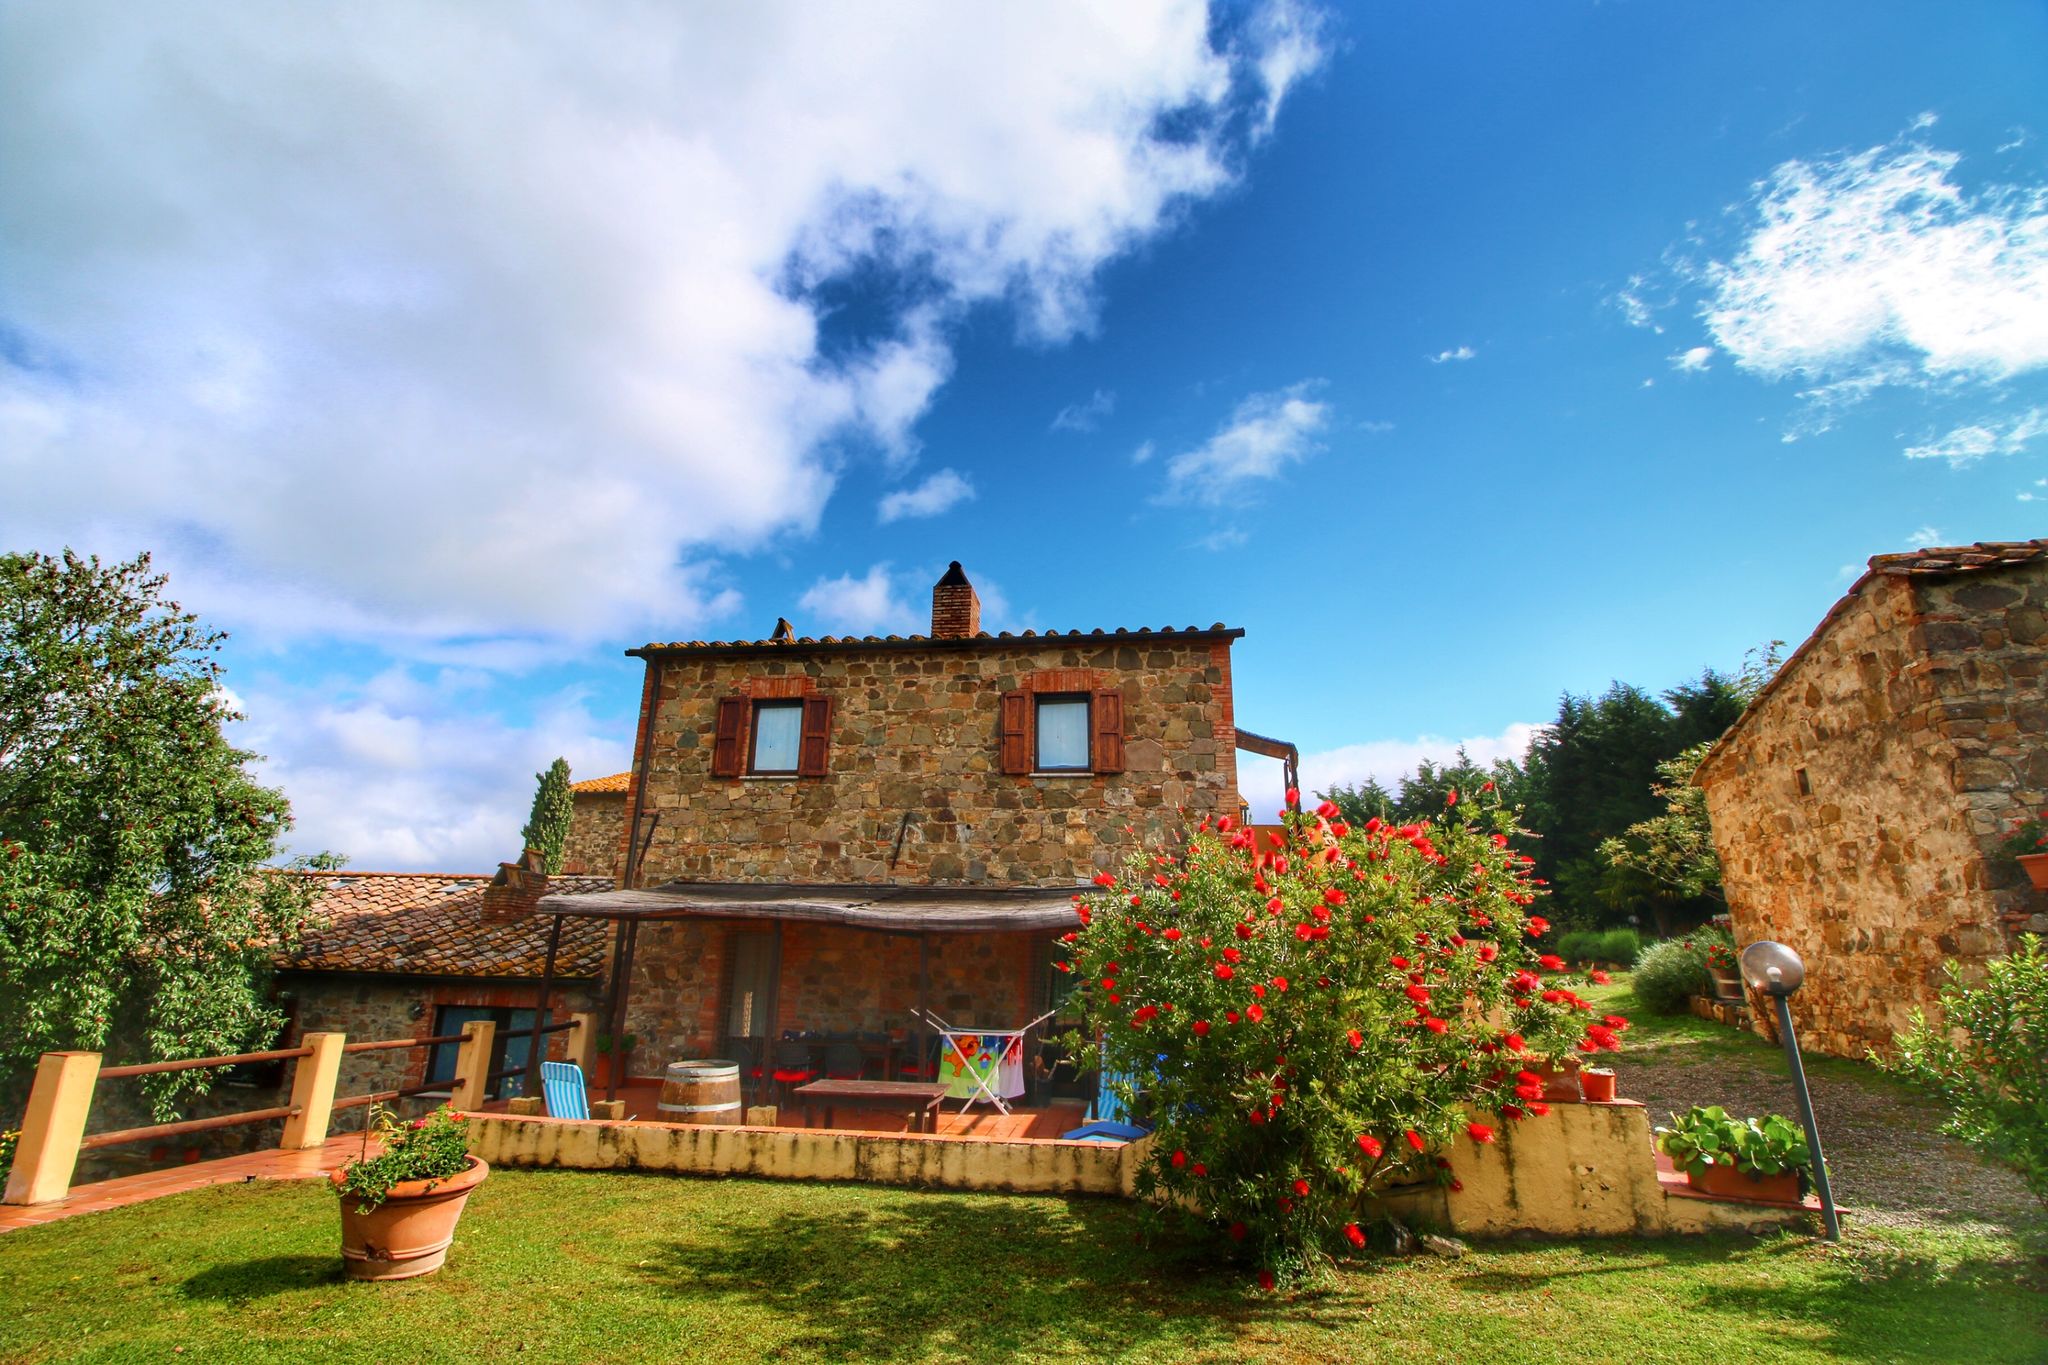 Wunderschönes toskanisches Ferienhaus mit Swimmingpool